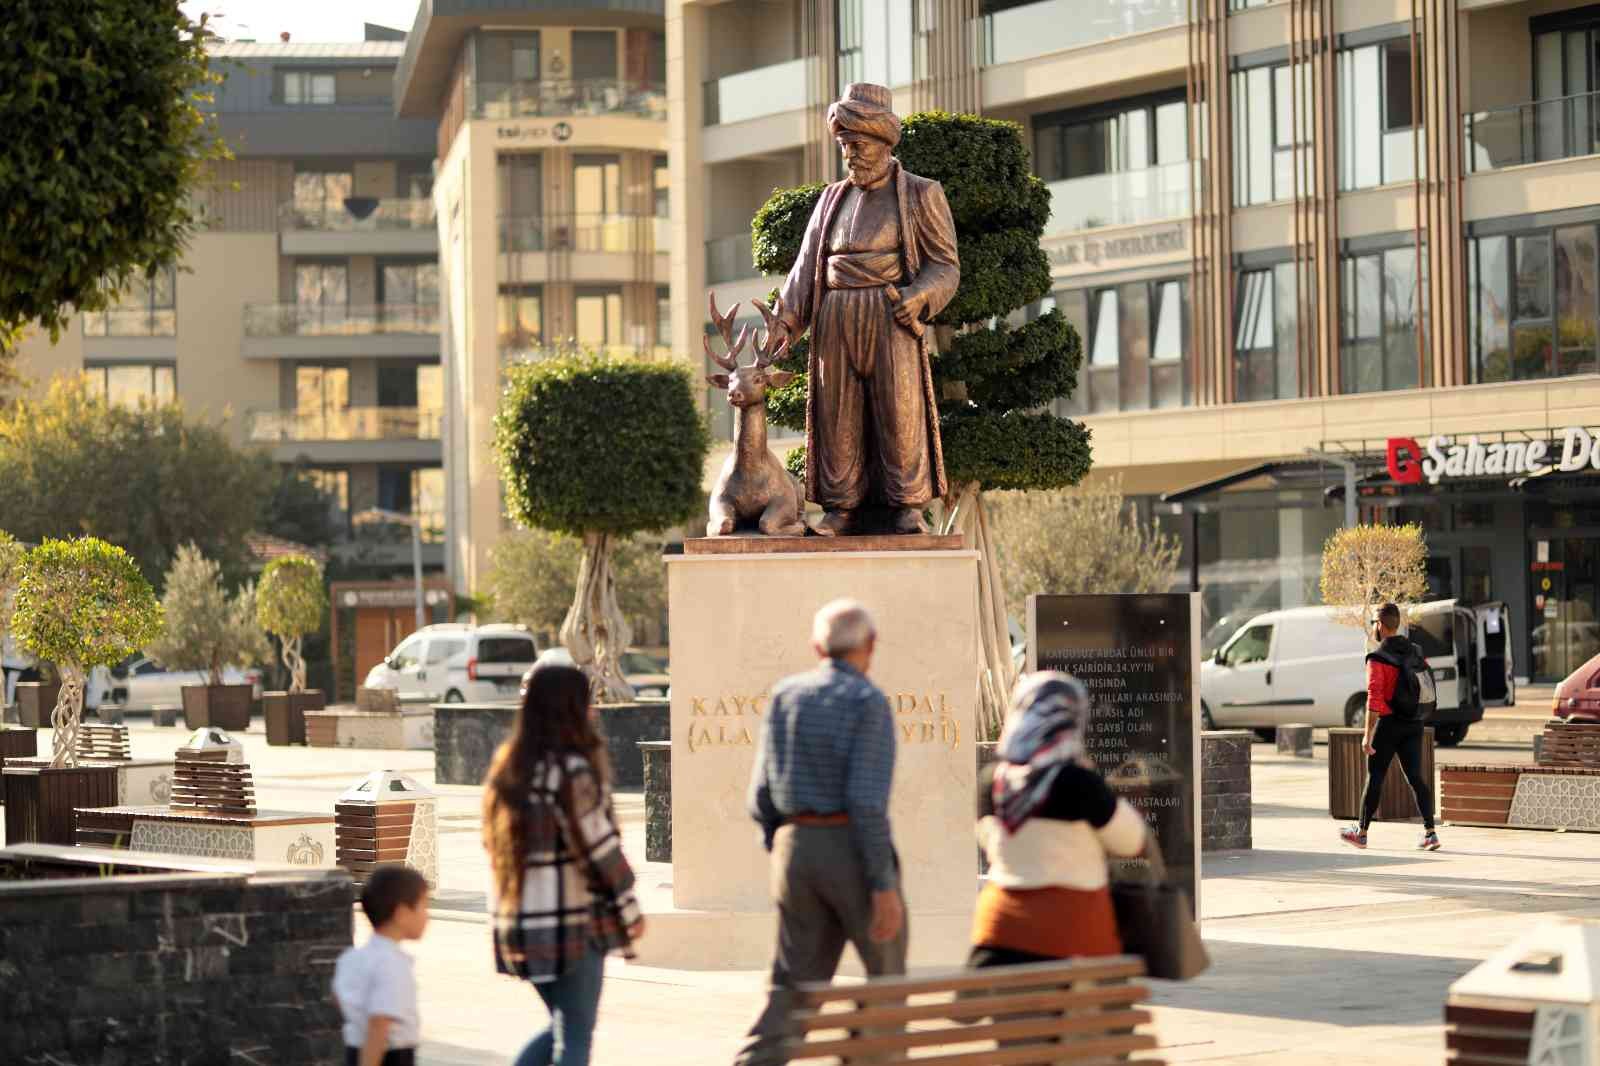 Alanya’da Kaygusuz Abdal Heykeli Hacet Meydanına yerleştirildi #antalya